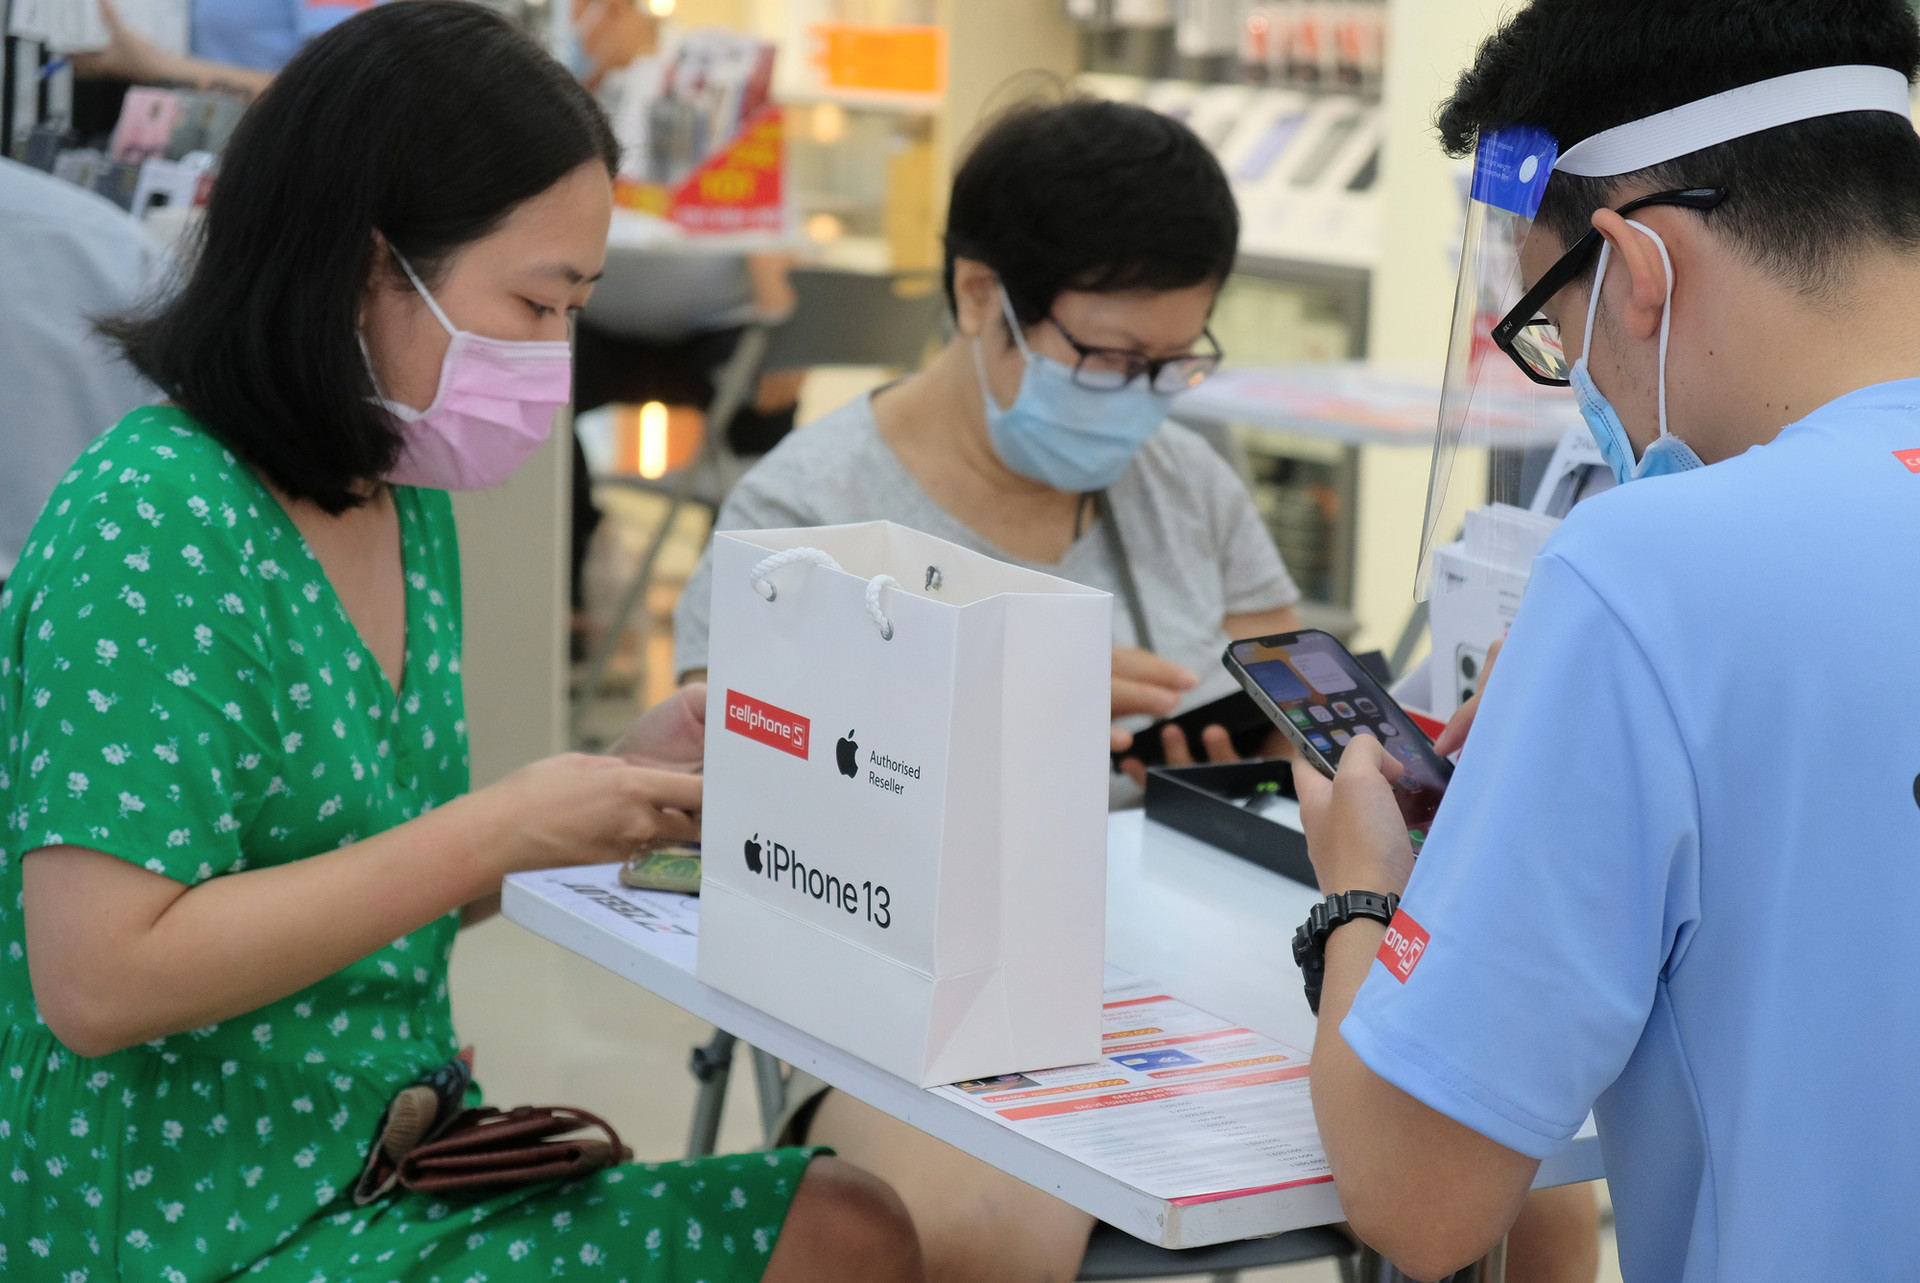 CellphoneS mở bán iPhone 13 chính hãng tại thị trường Việt Nam - Ảnh 3.